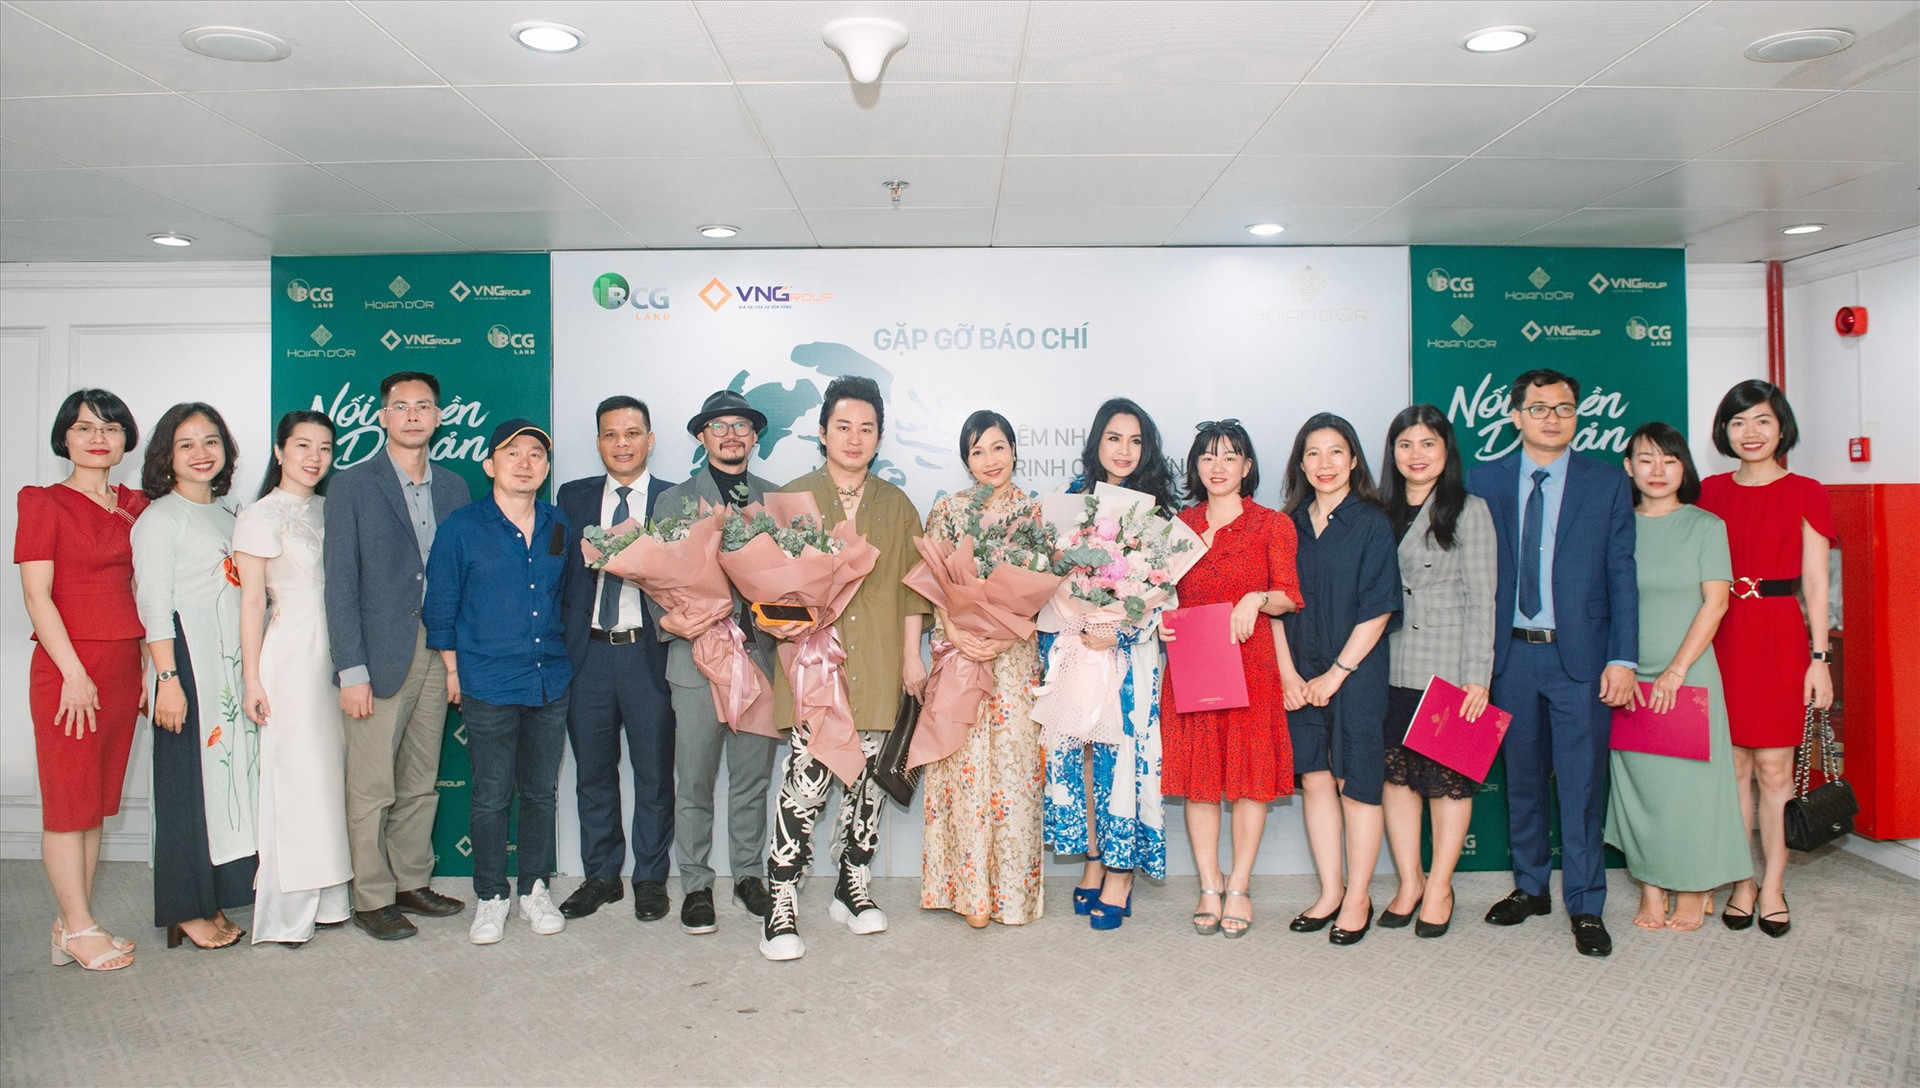 Đêm nhạc quy tụ nhiều ca sỹ hàng đầu Việt Nam tham gia trình diễn